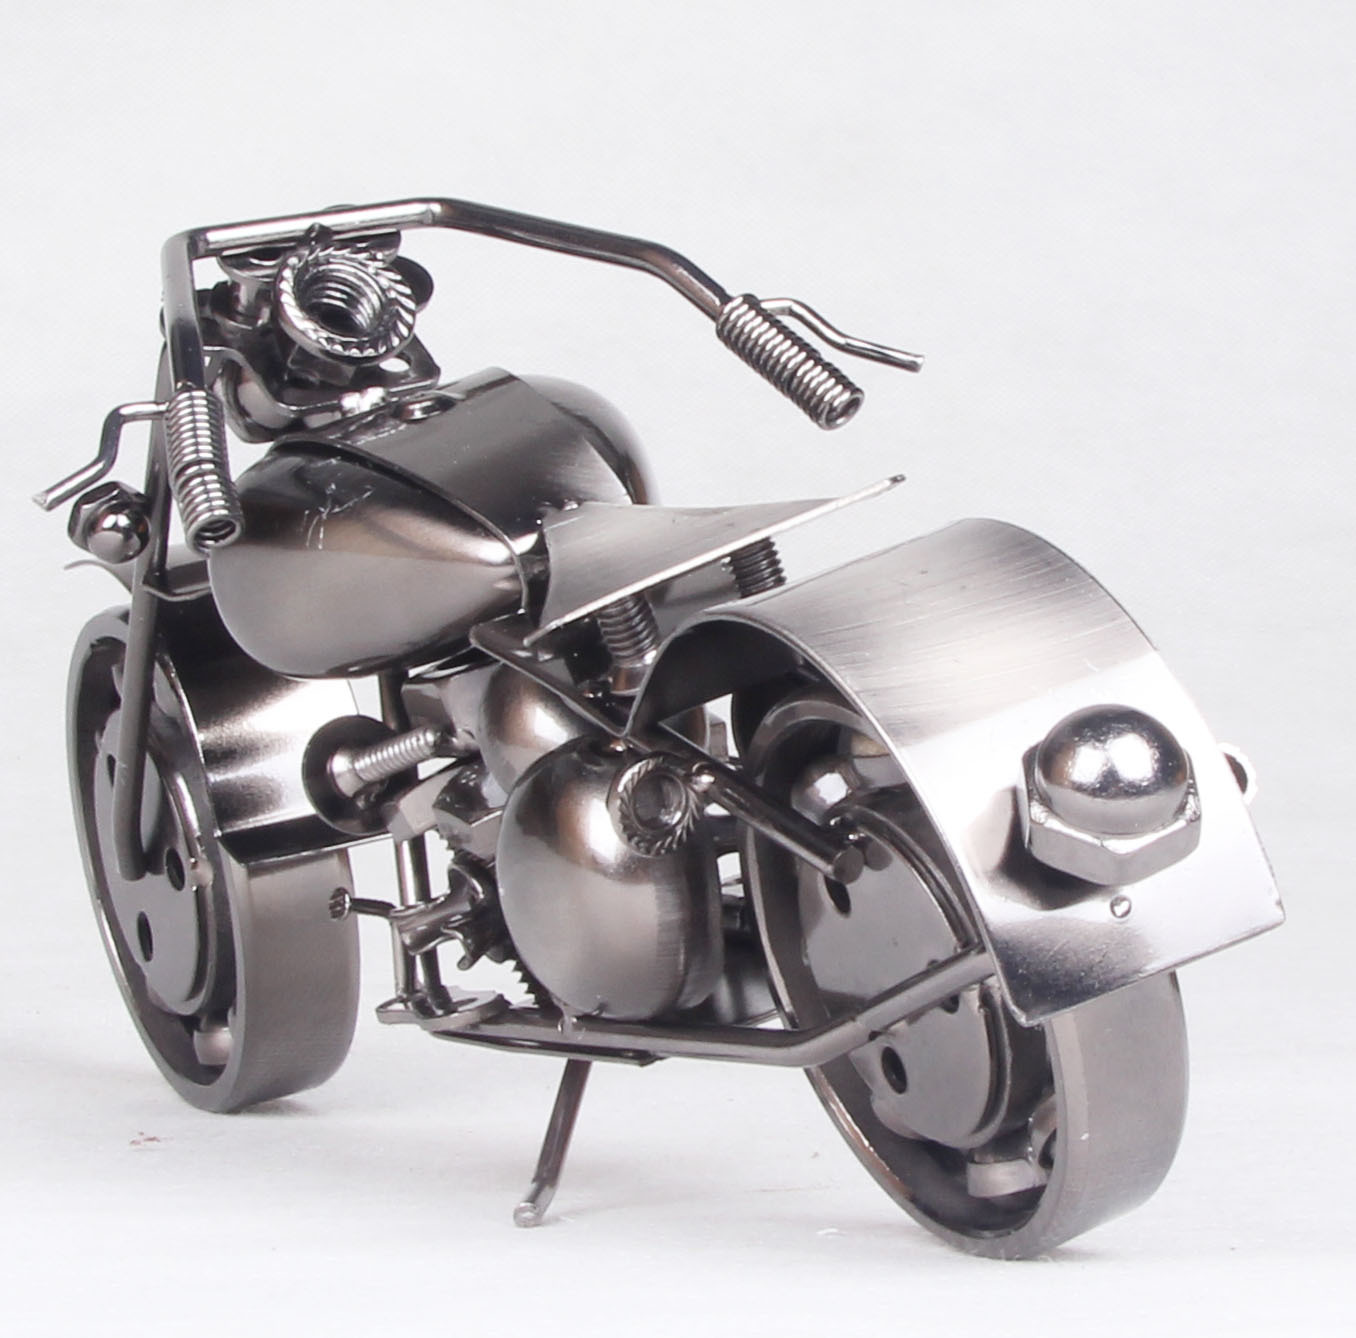 mettle 金属工艺品 大号摩托车模型 家居摆件 创意礼品 节日礼品